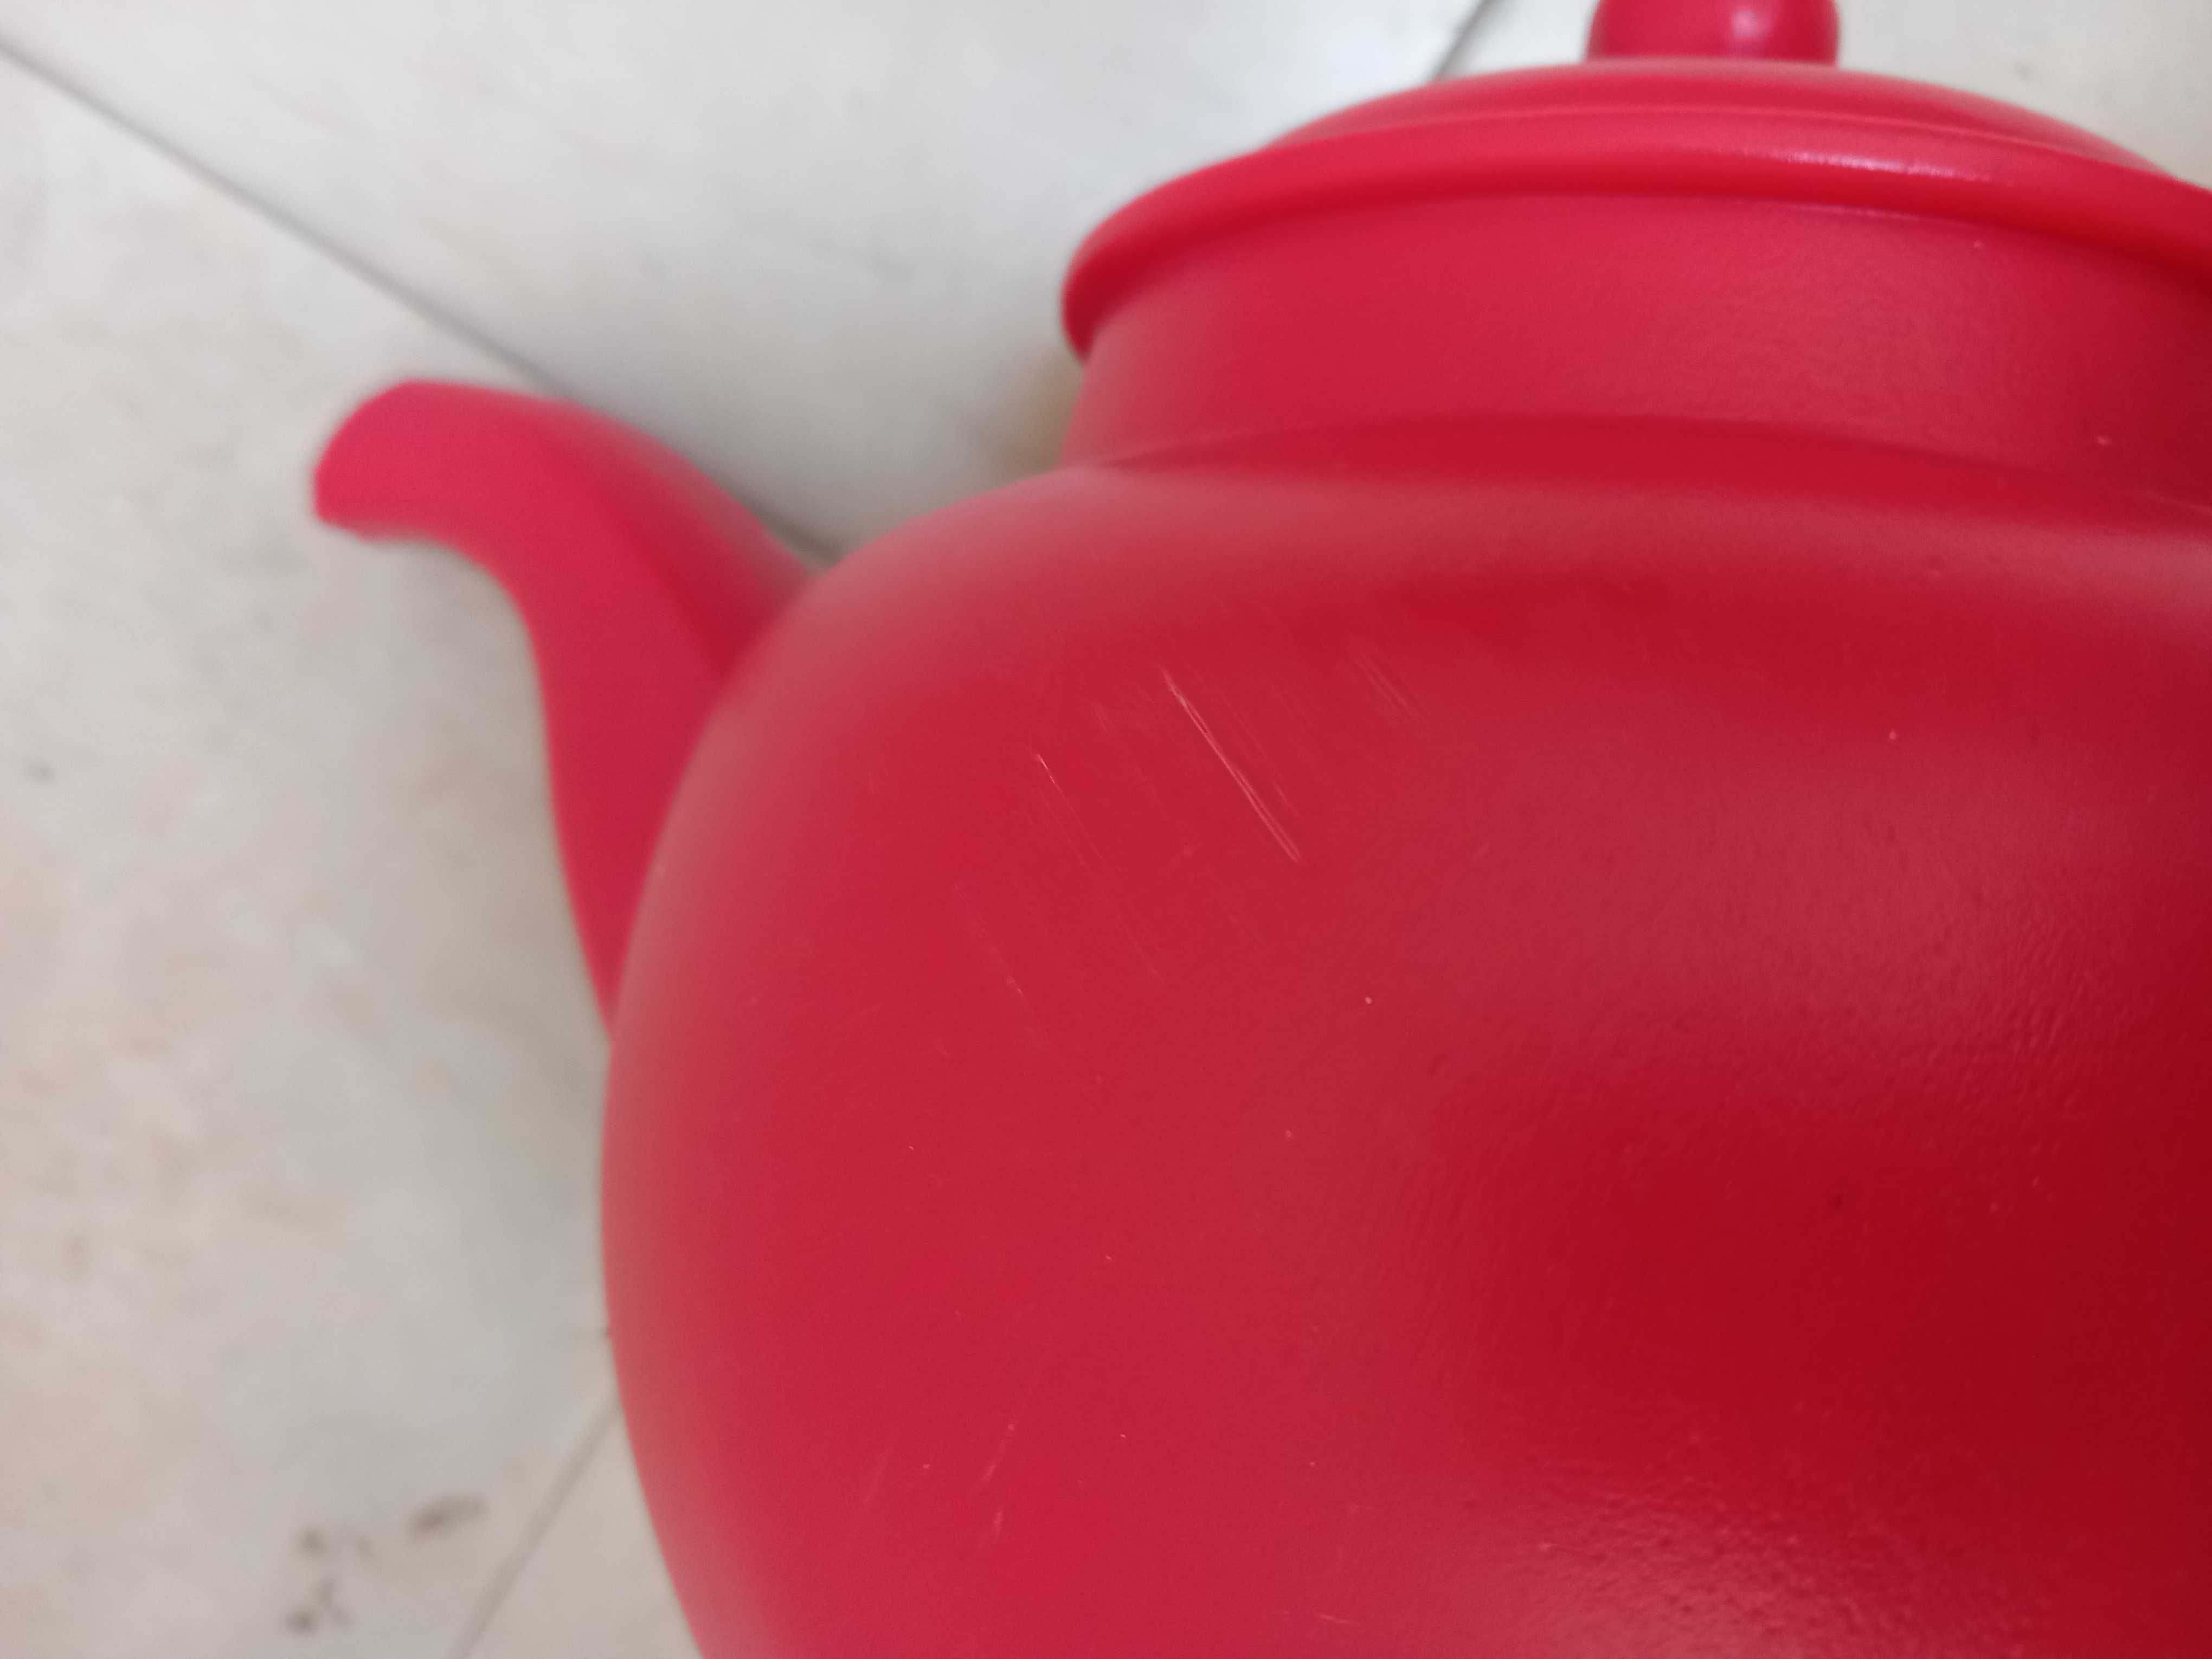 Regador original forma bule em plástico vermelho cap. 1,5 l